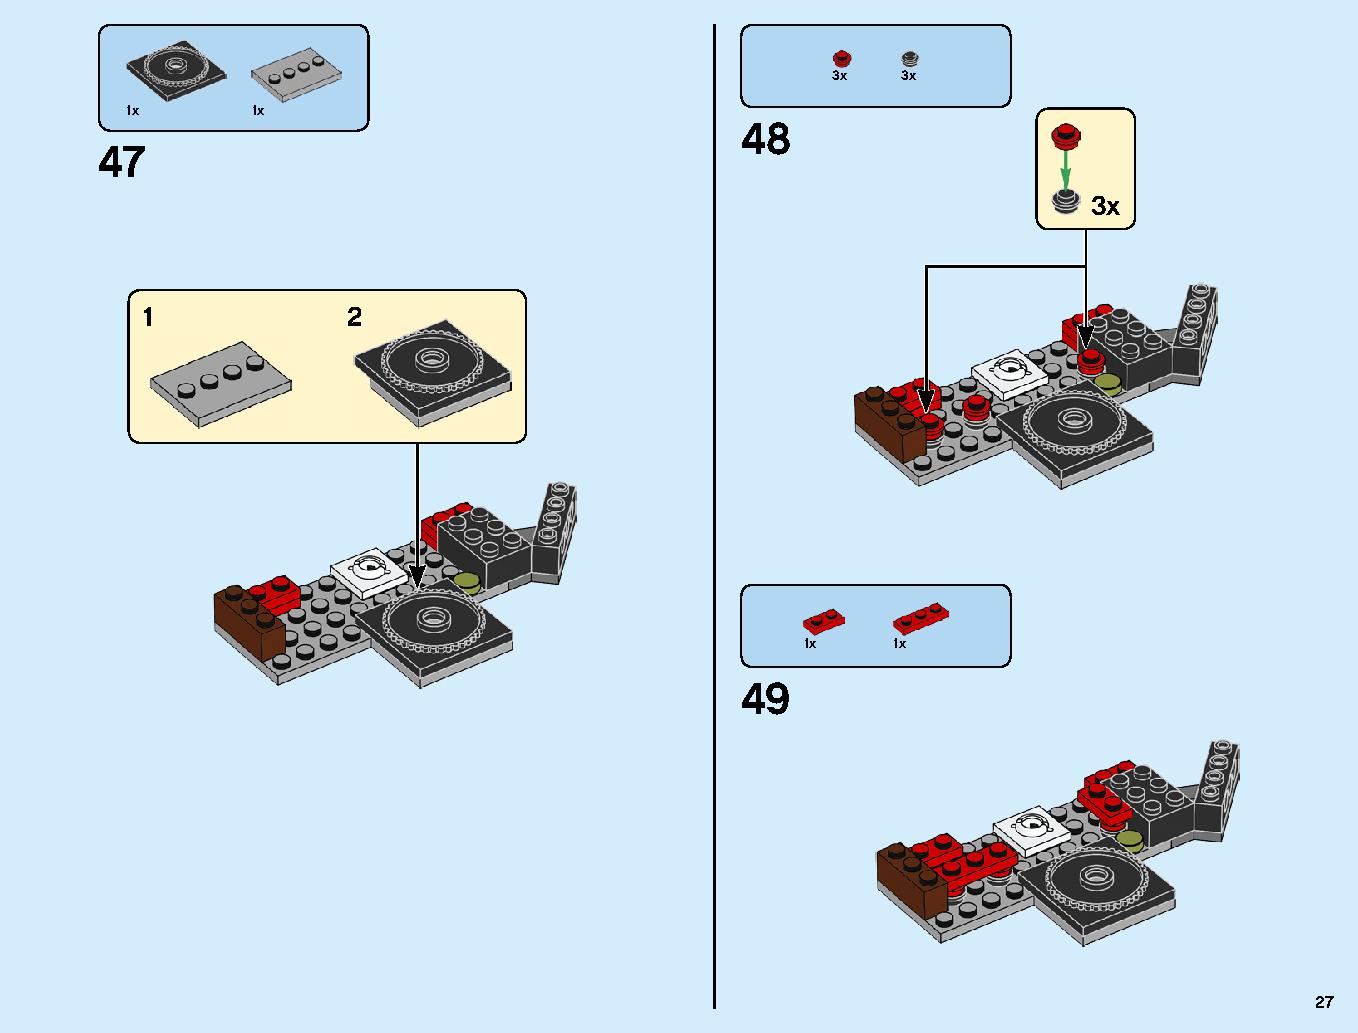 ニンジャ道場 70670 レゴの商品情報 レゴの説明書・組立方法 27 page